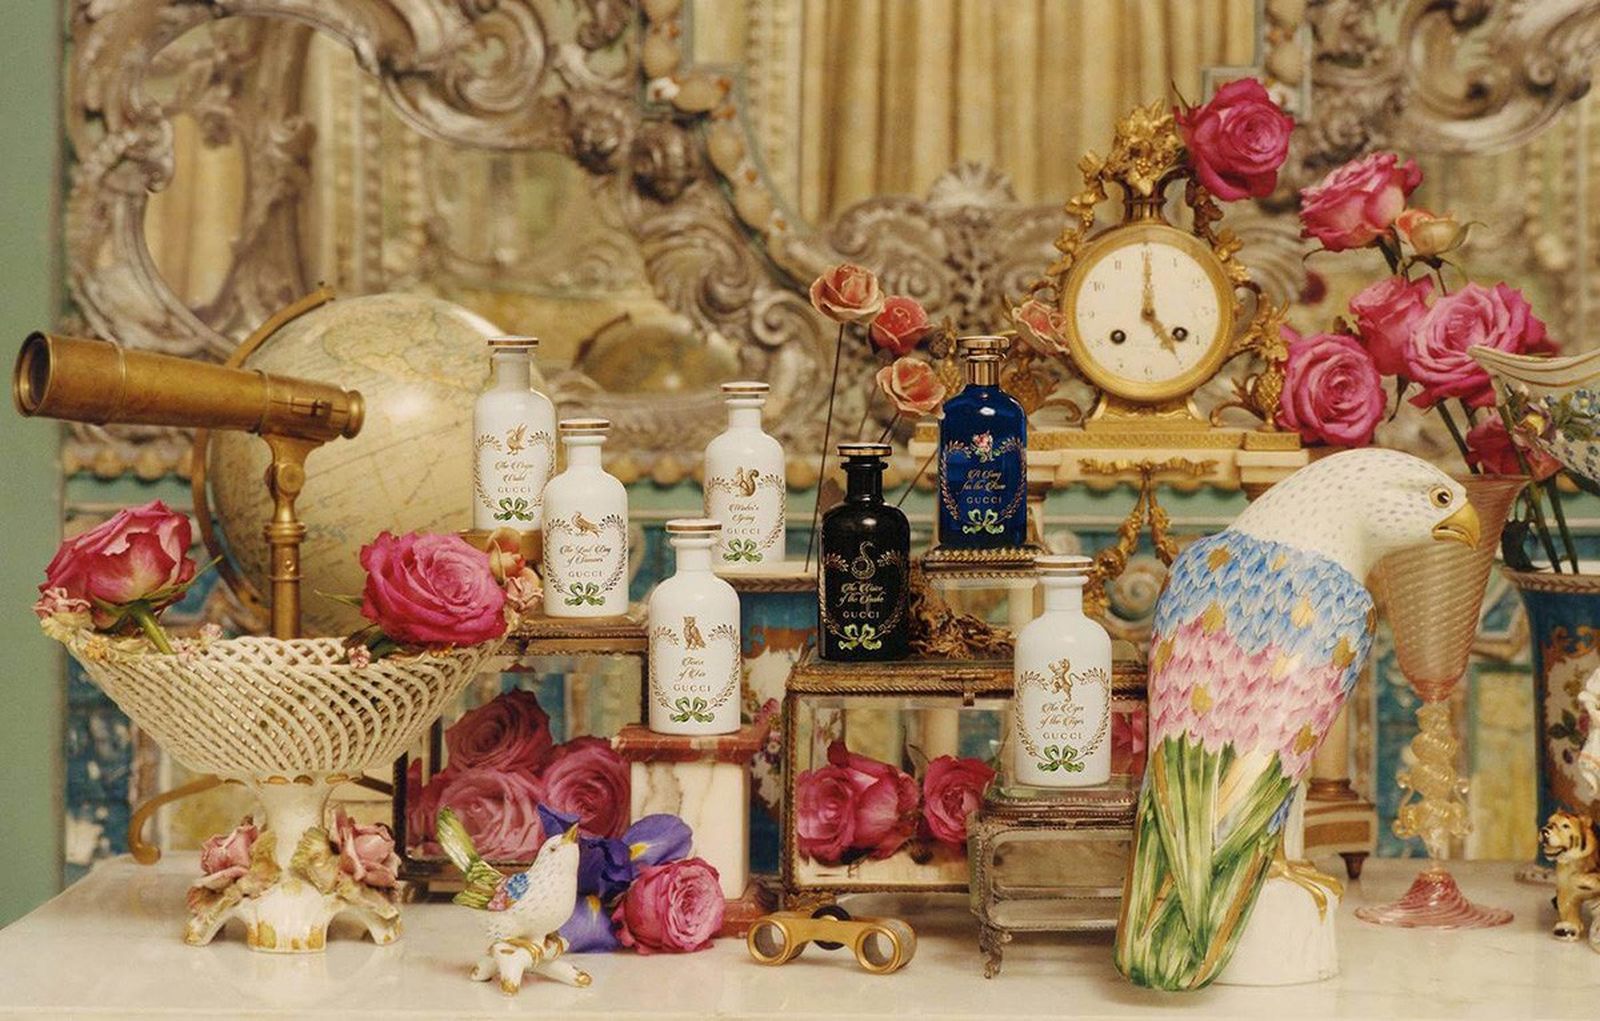 The Alchemist’s Garden: Gucci представили необычную парфюмерную линию, вдохновленную старинными аптеками